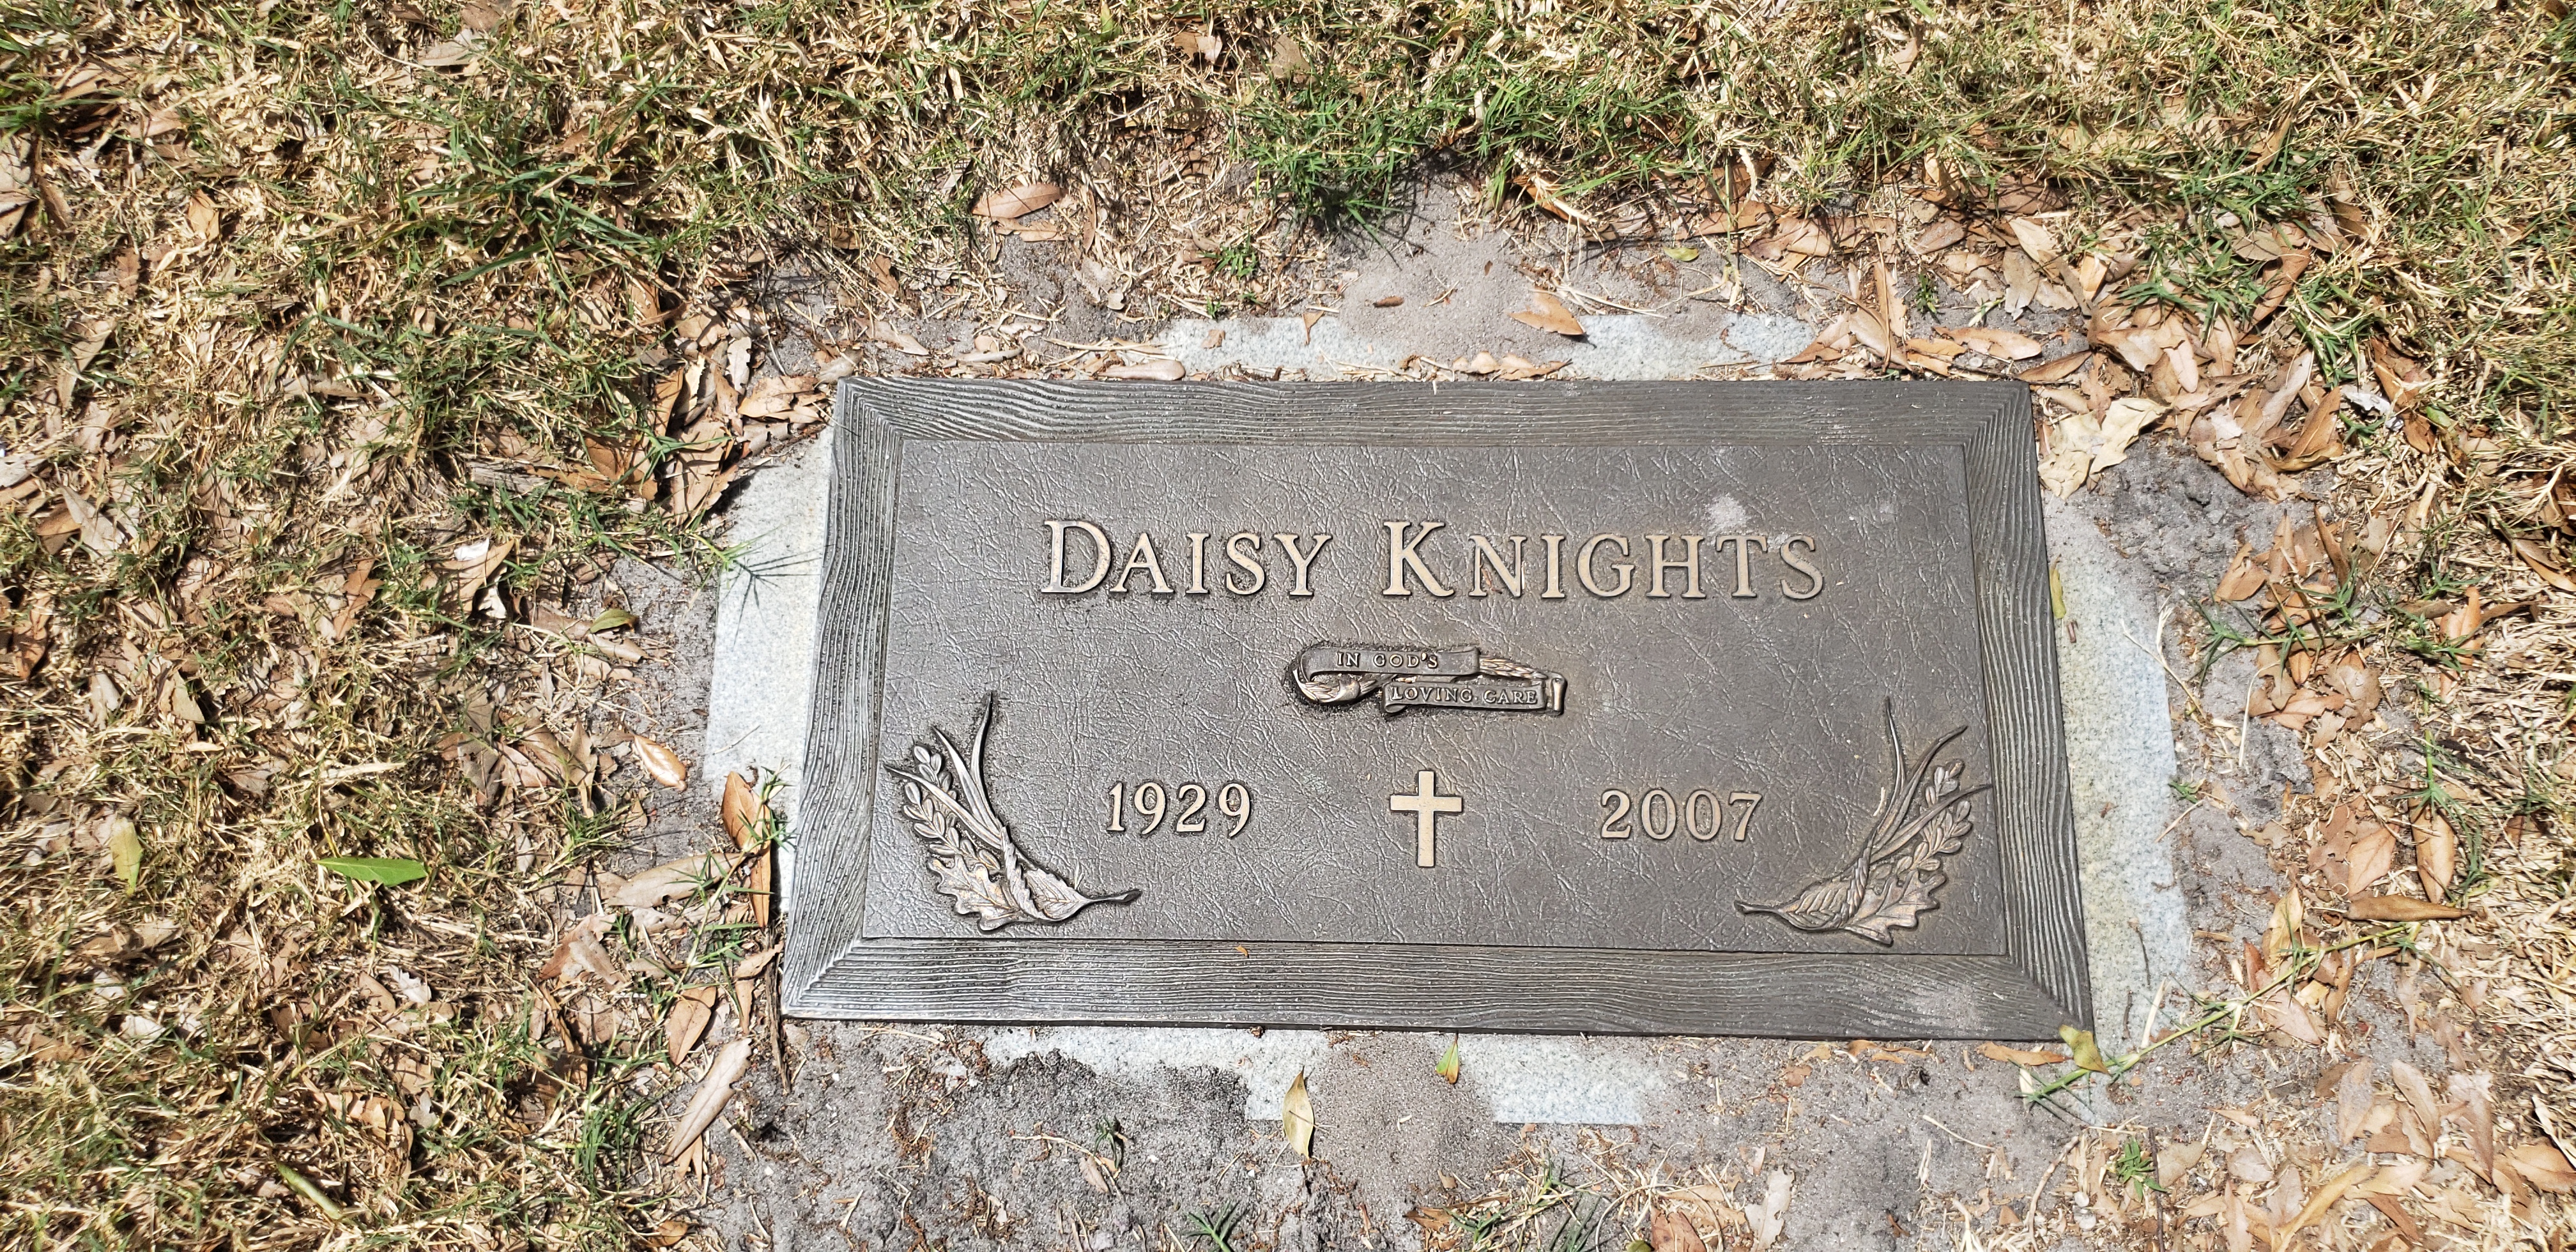 Daisy Knights